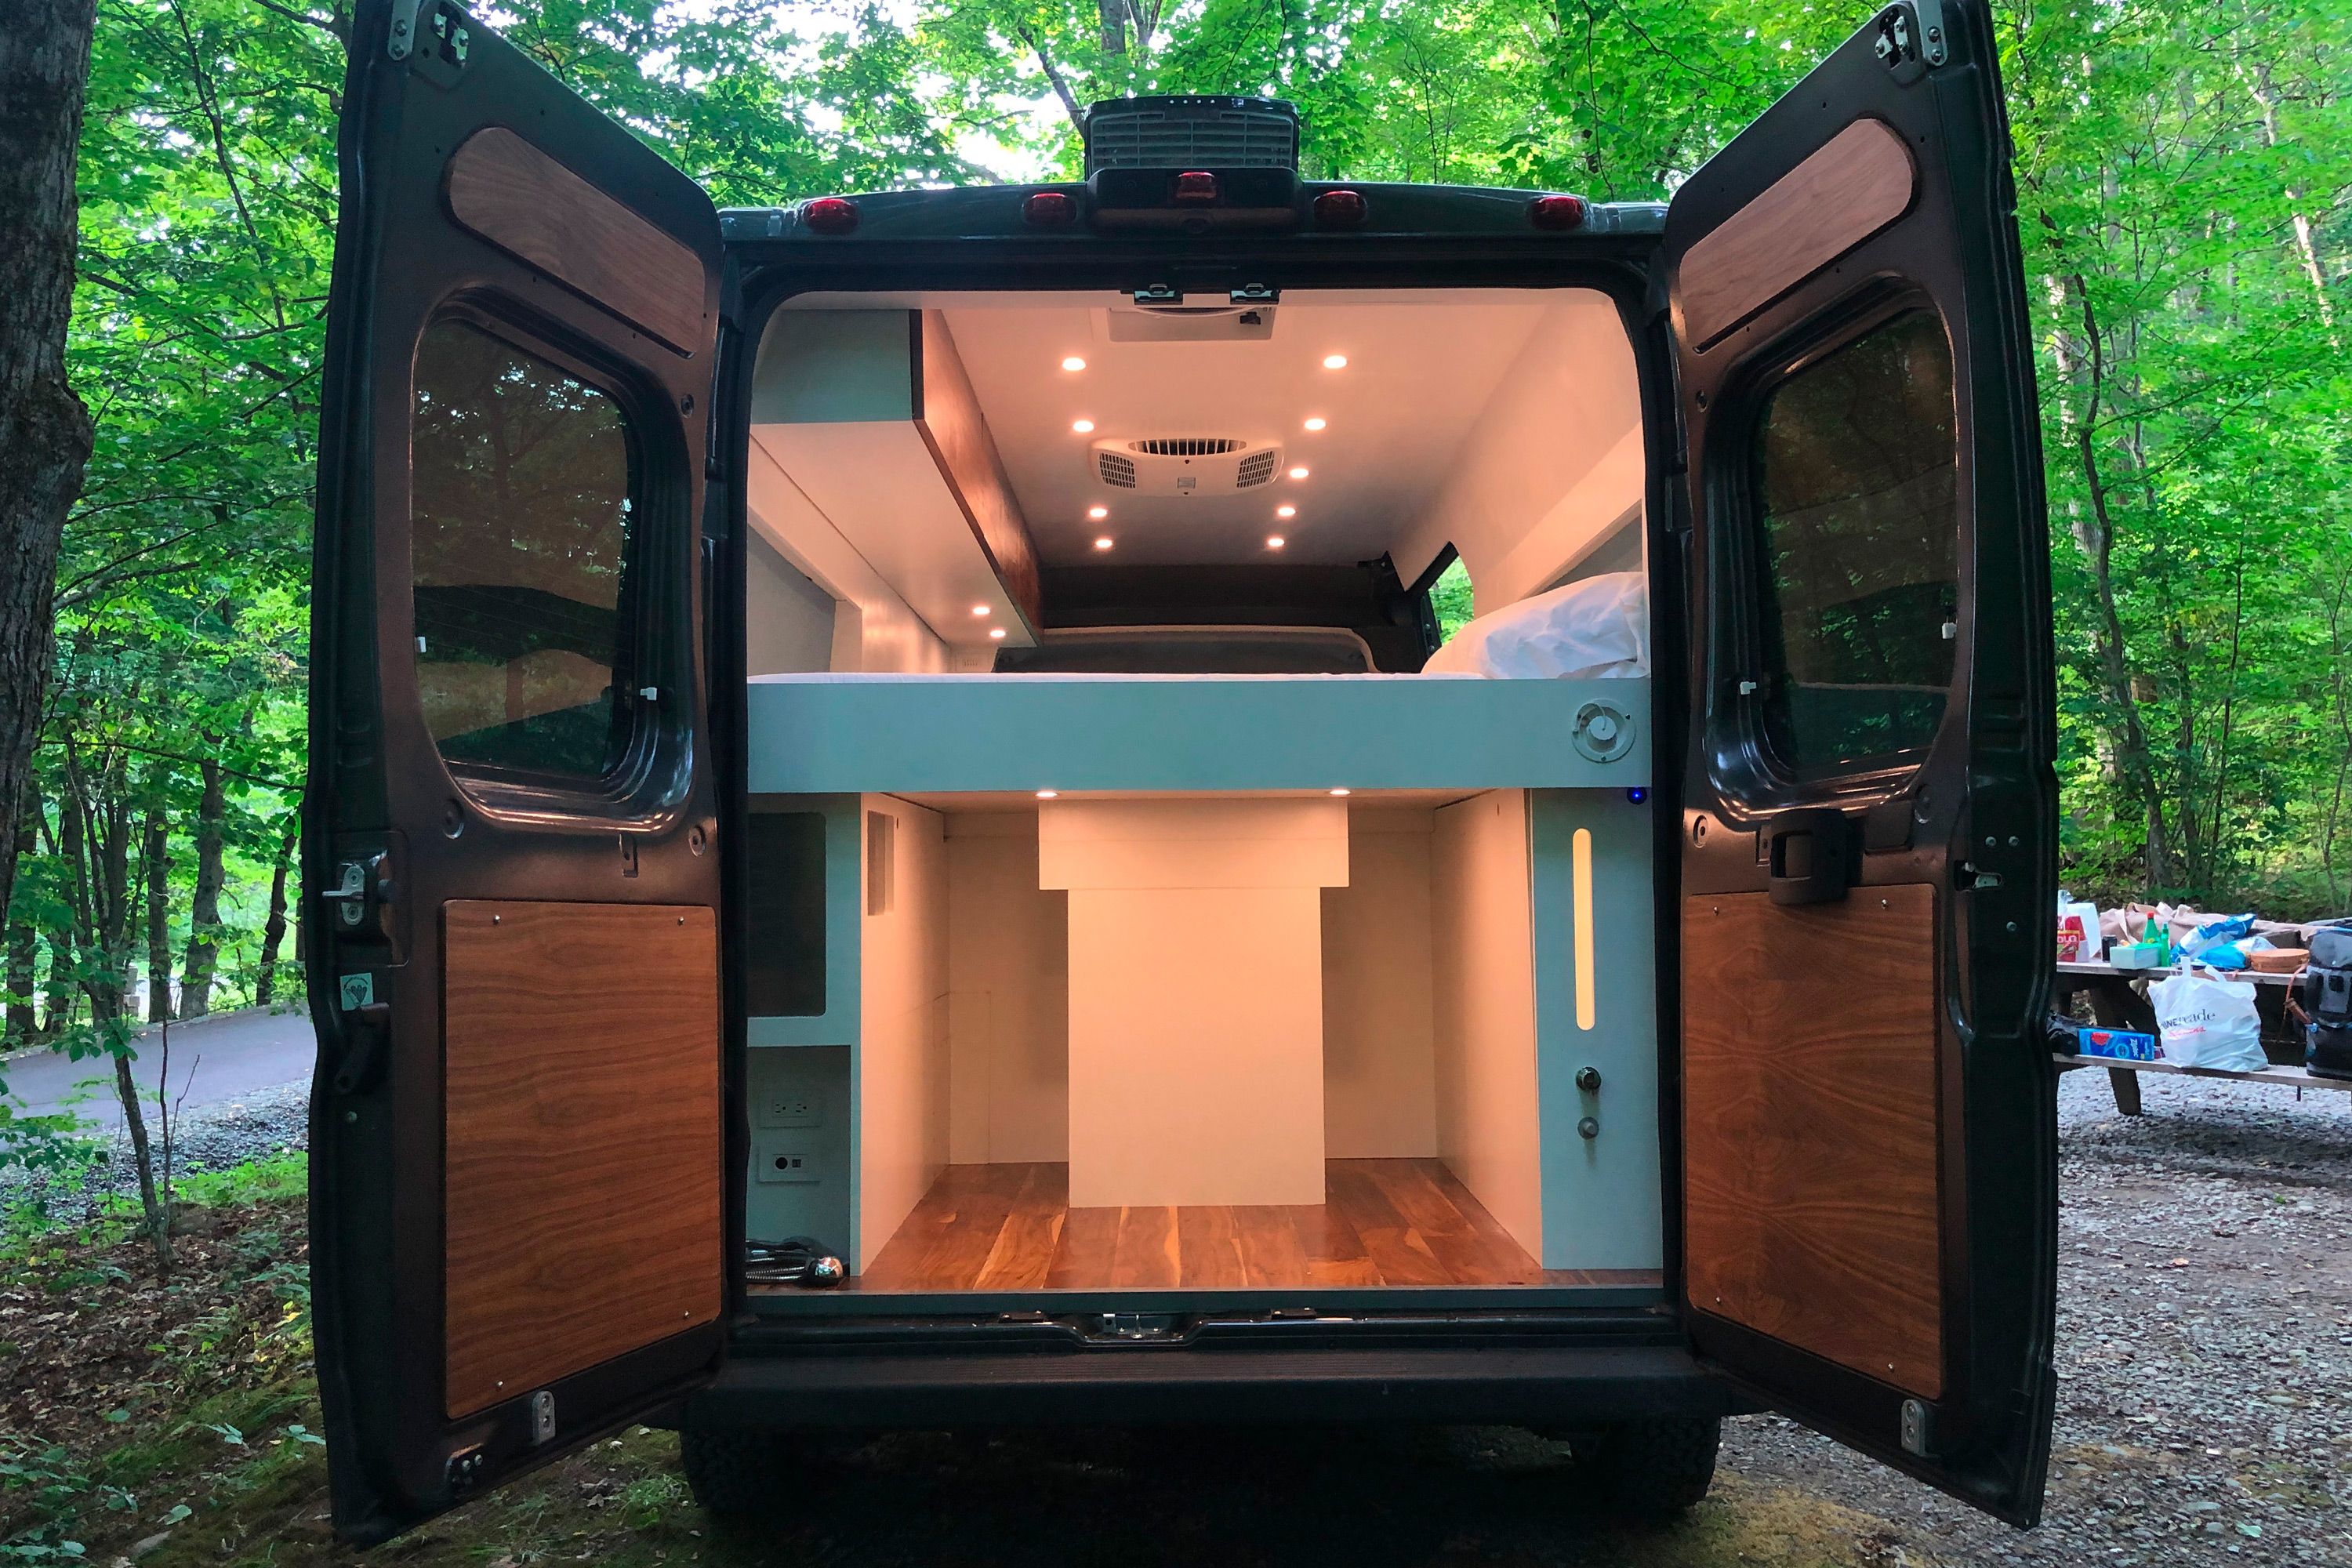 The Best Camper Vans of 2020